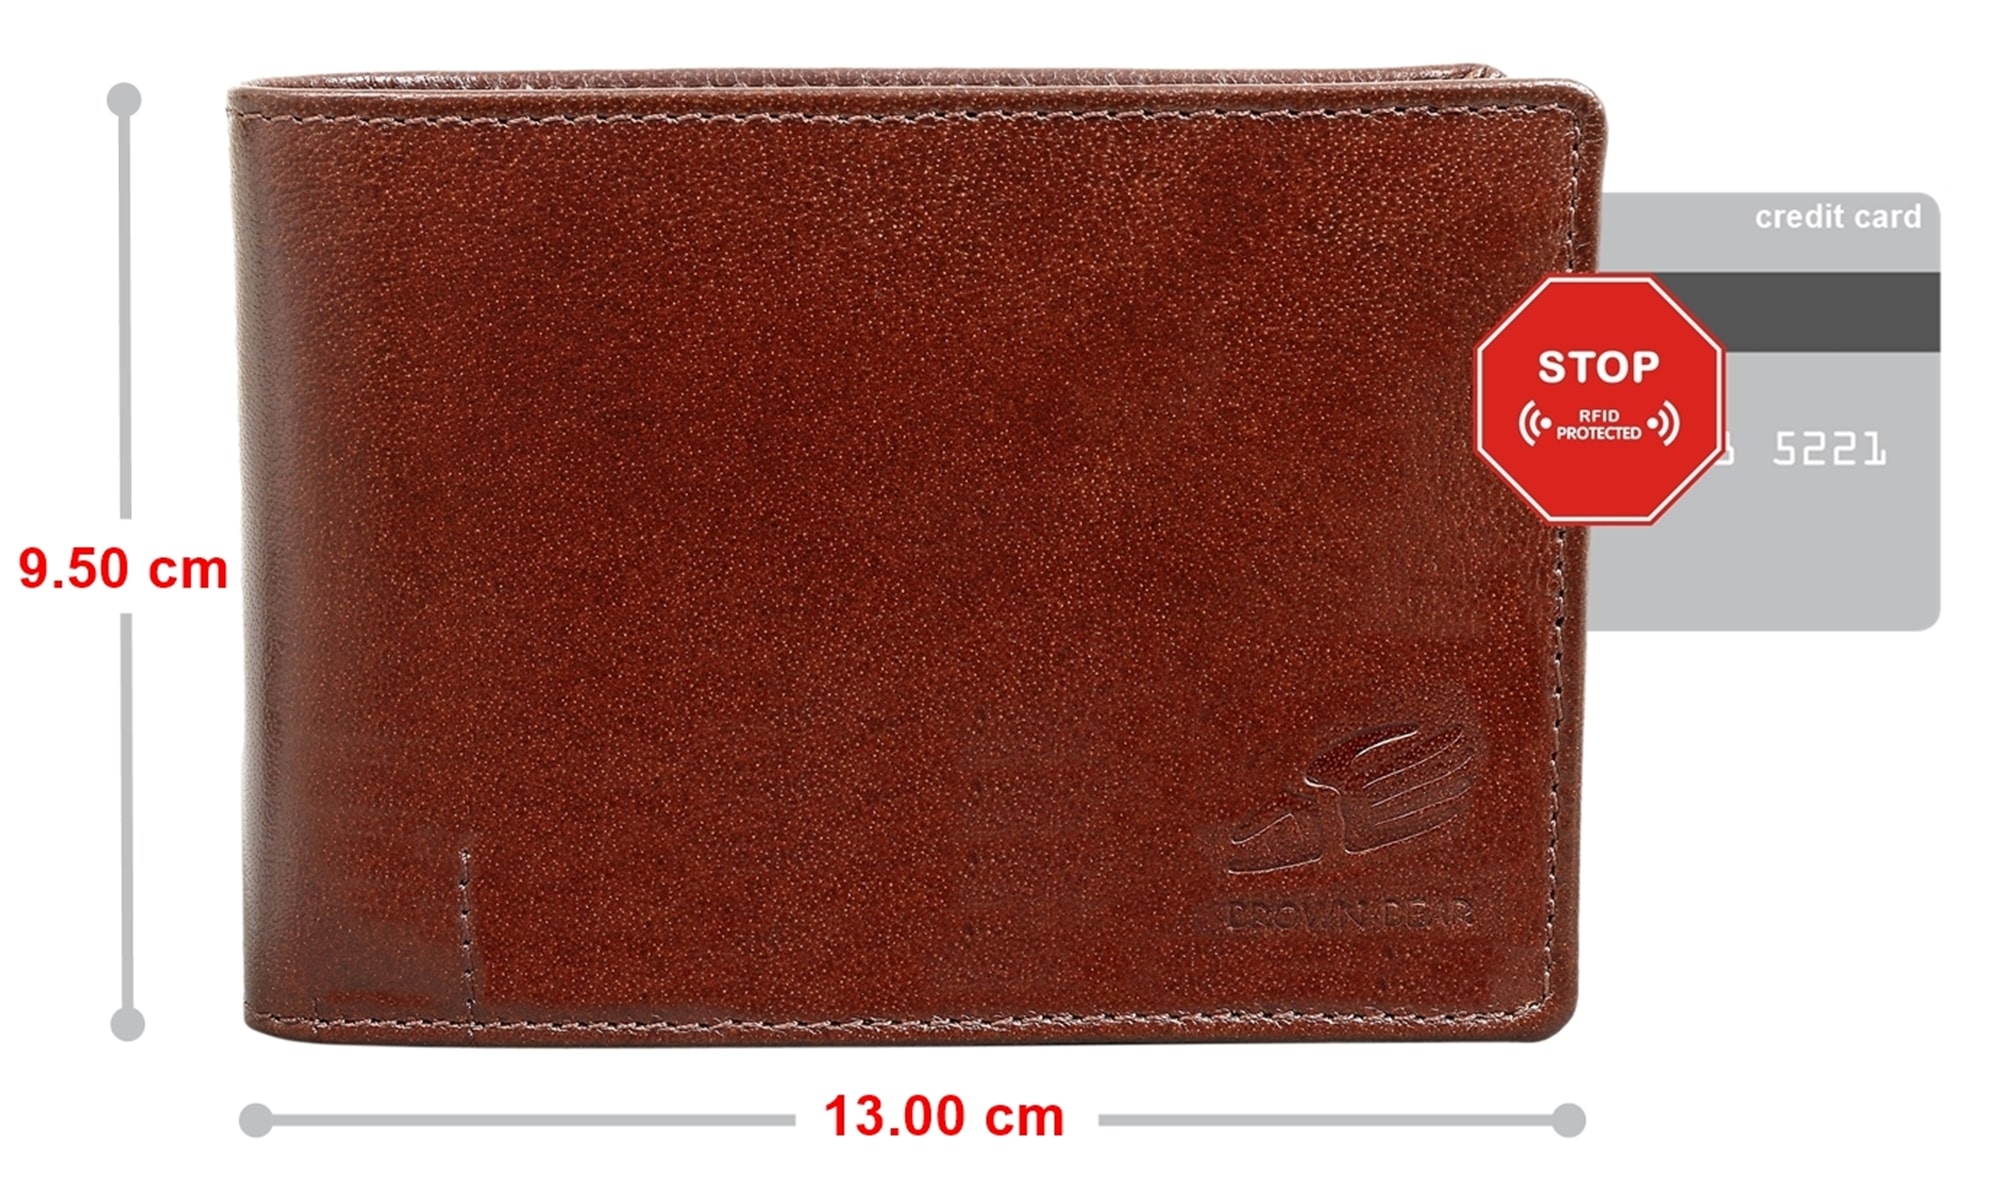 Brown Bear IBP 1051 - Herren-Geldbörse mit Reißverschlussfach Braun Toscana